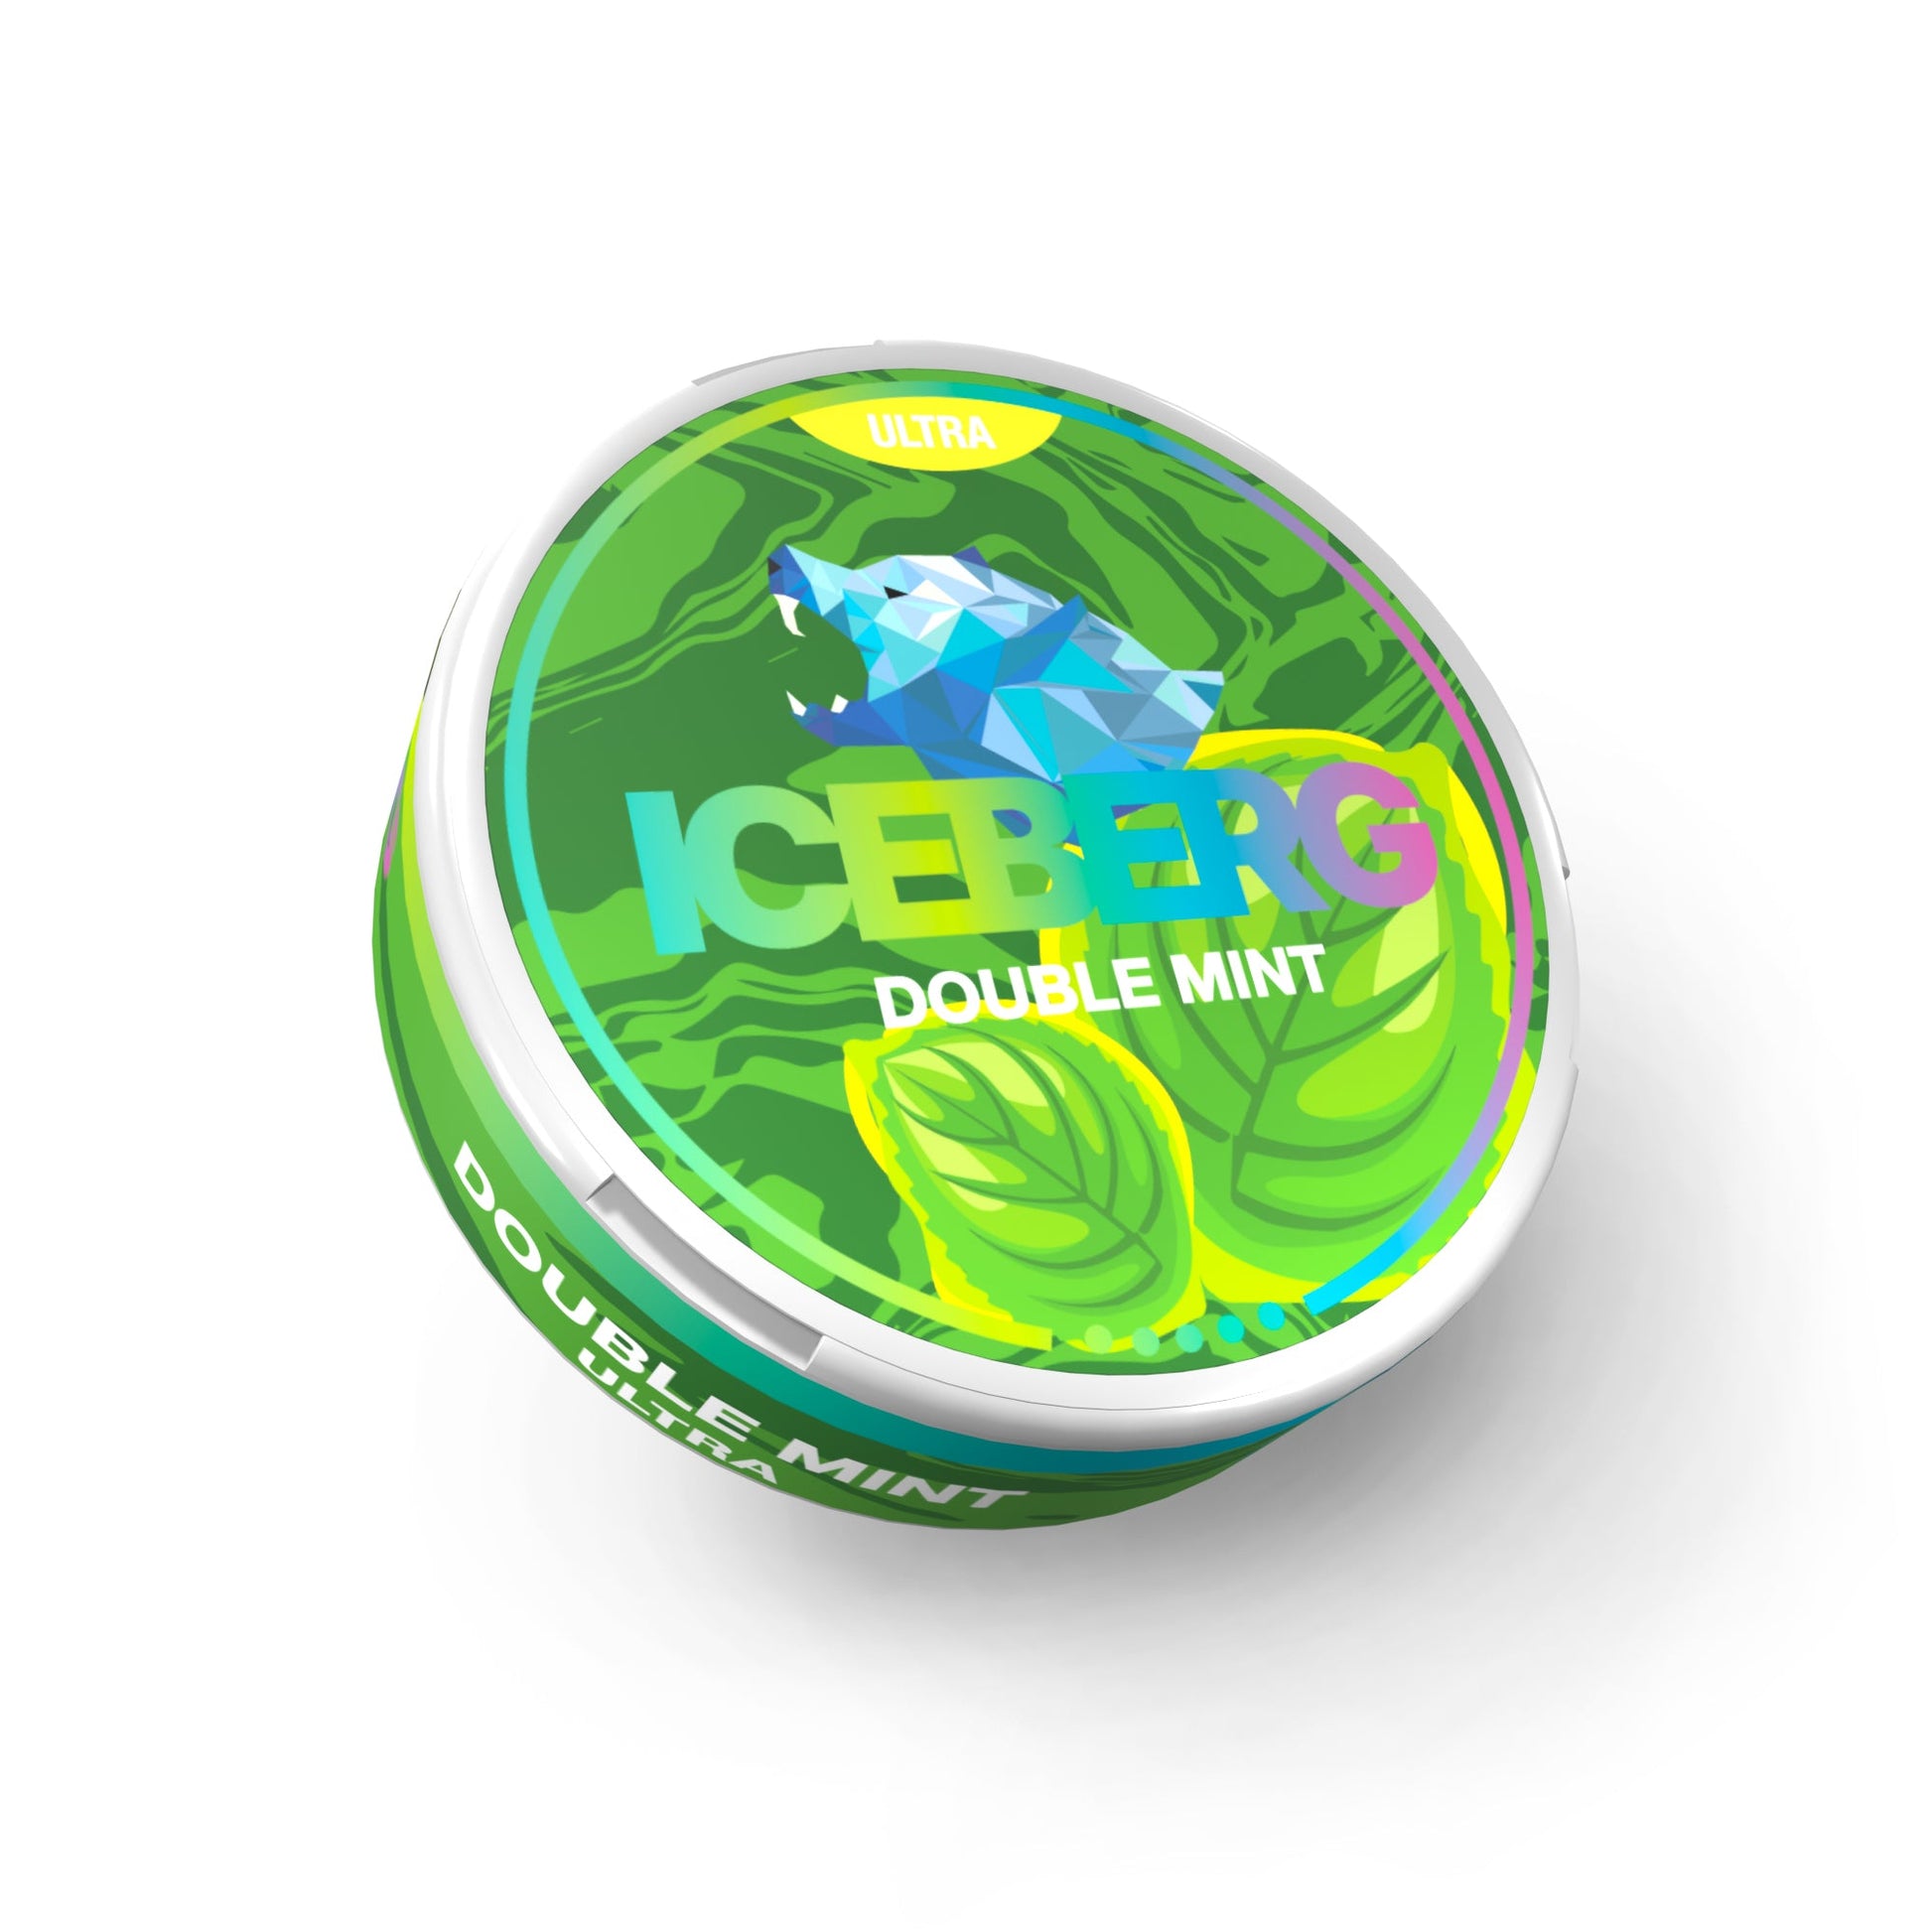 Iceberg Double Mint 150mg